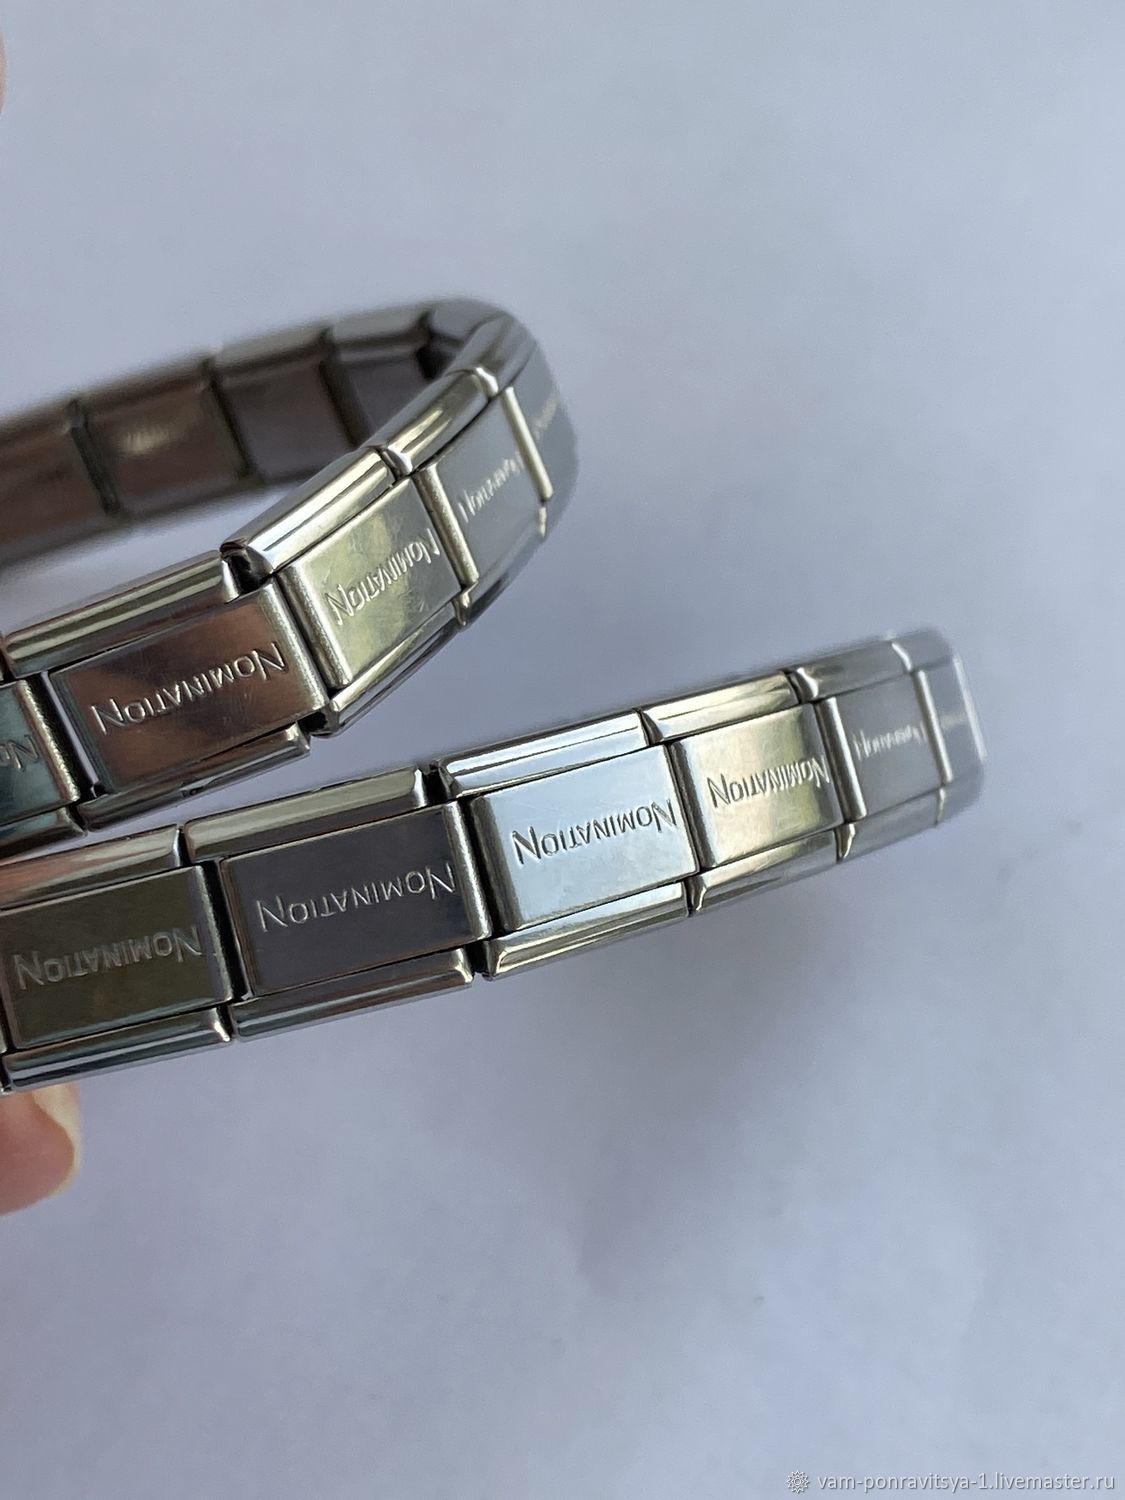 ОРИГИНАЛ Nomination браслет женский нержавеющая сталь Италия купить в интернет-магазине Ярмарка Мастеров по цене 2625 ₽ – TCBKQRU